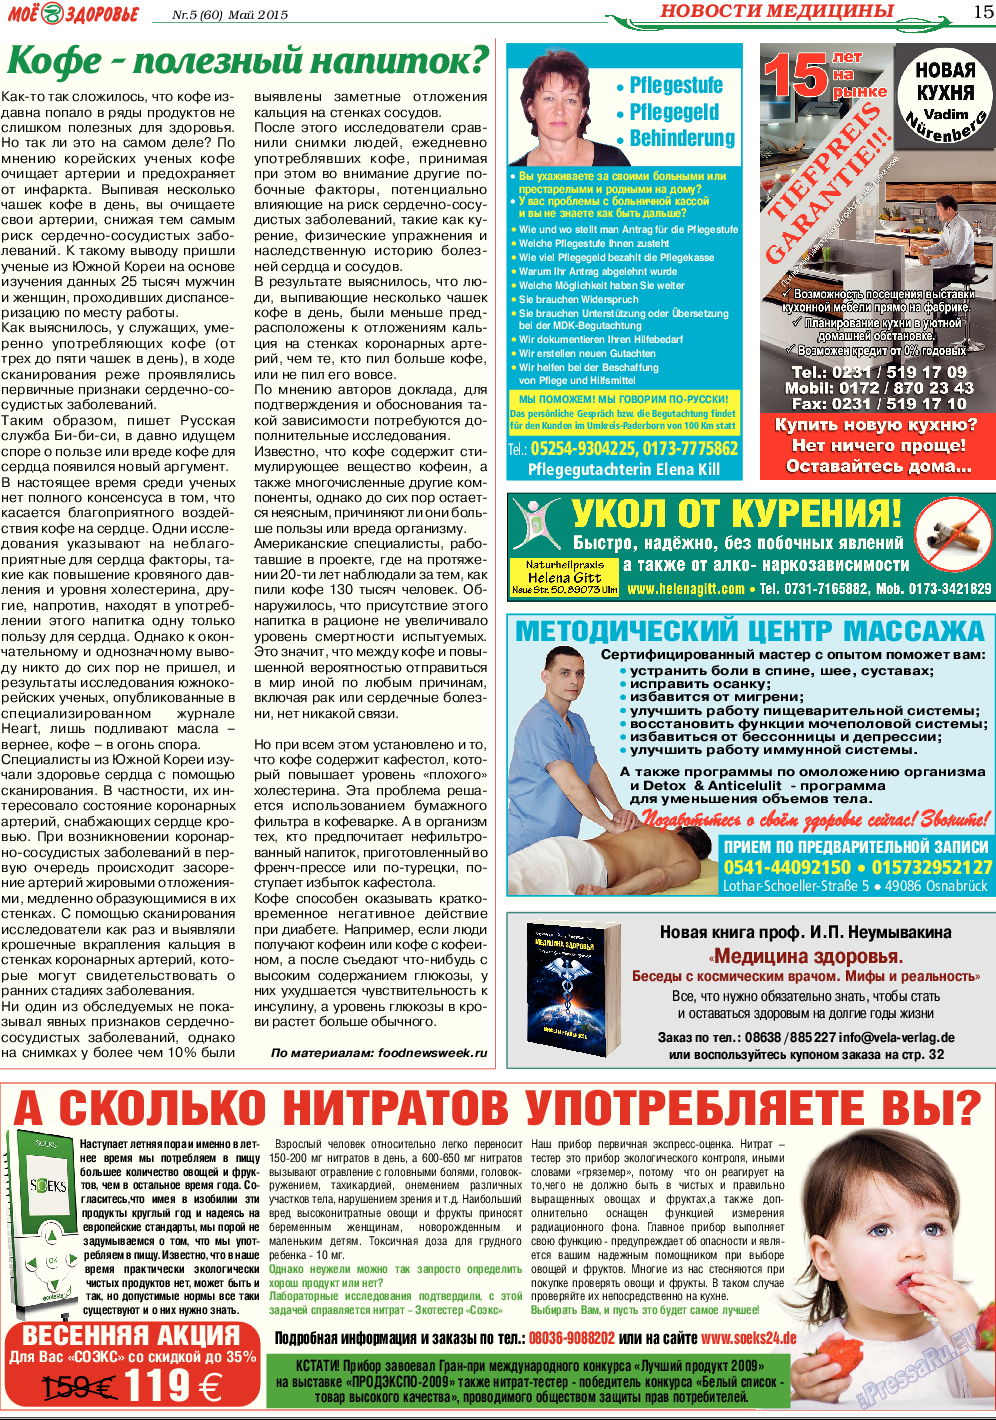 Кругозор, газета. 2015 №5 стр.15